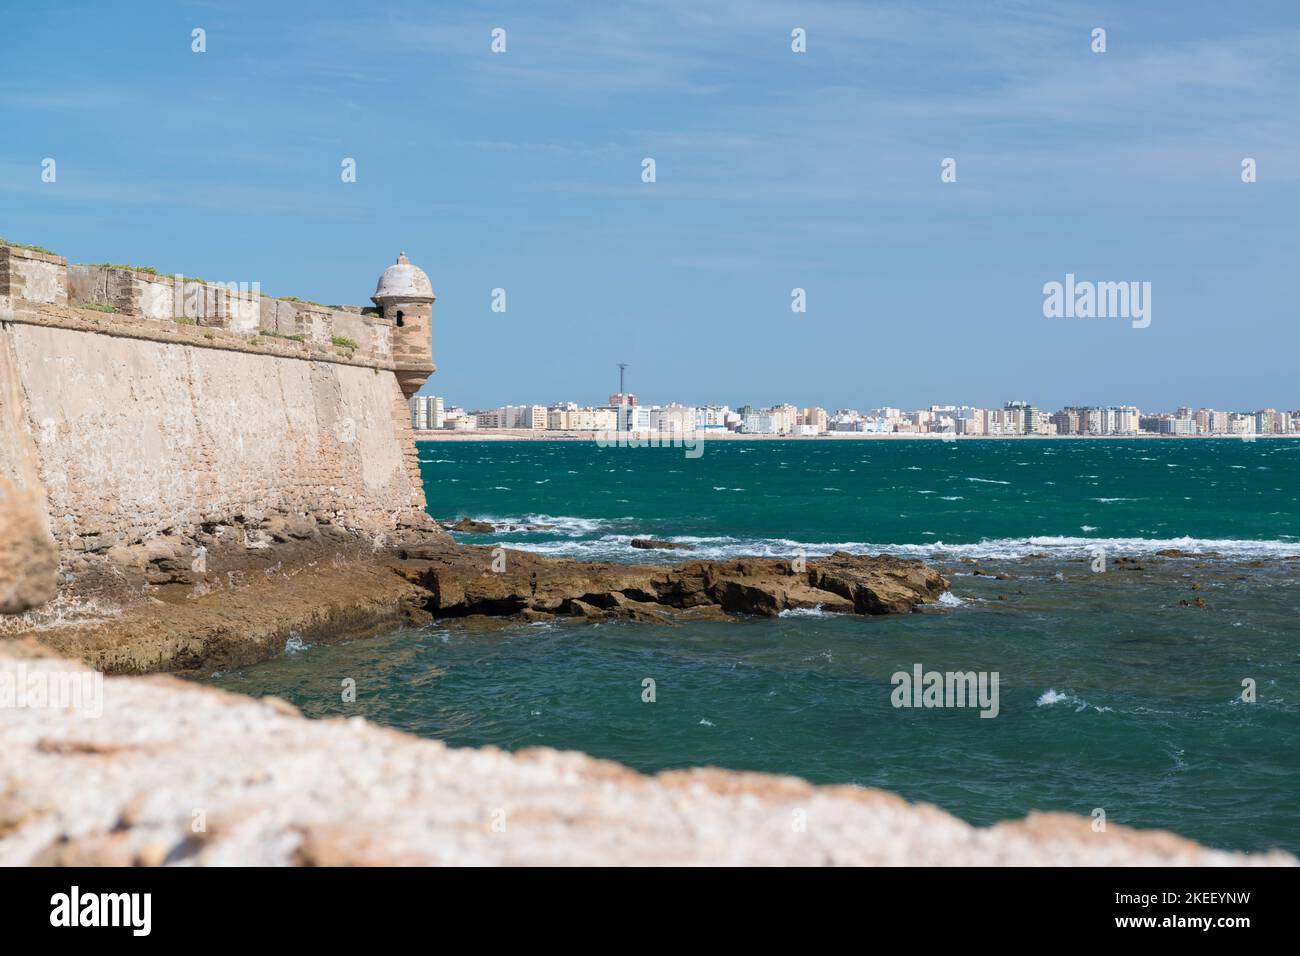 Die Mauern von Castillo de San Sebastián, Cádiz, Spanien, befinden sich auf einer kleinen Insel, die von der Hauptstadt getrennt ist und im Hintergrund sichtbar ist. Stockfoto